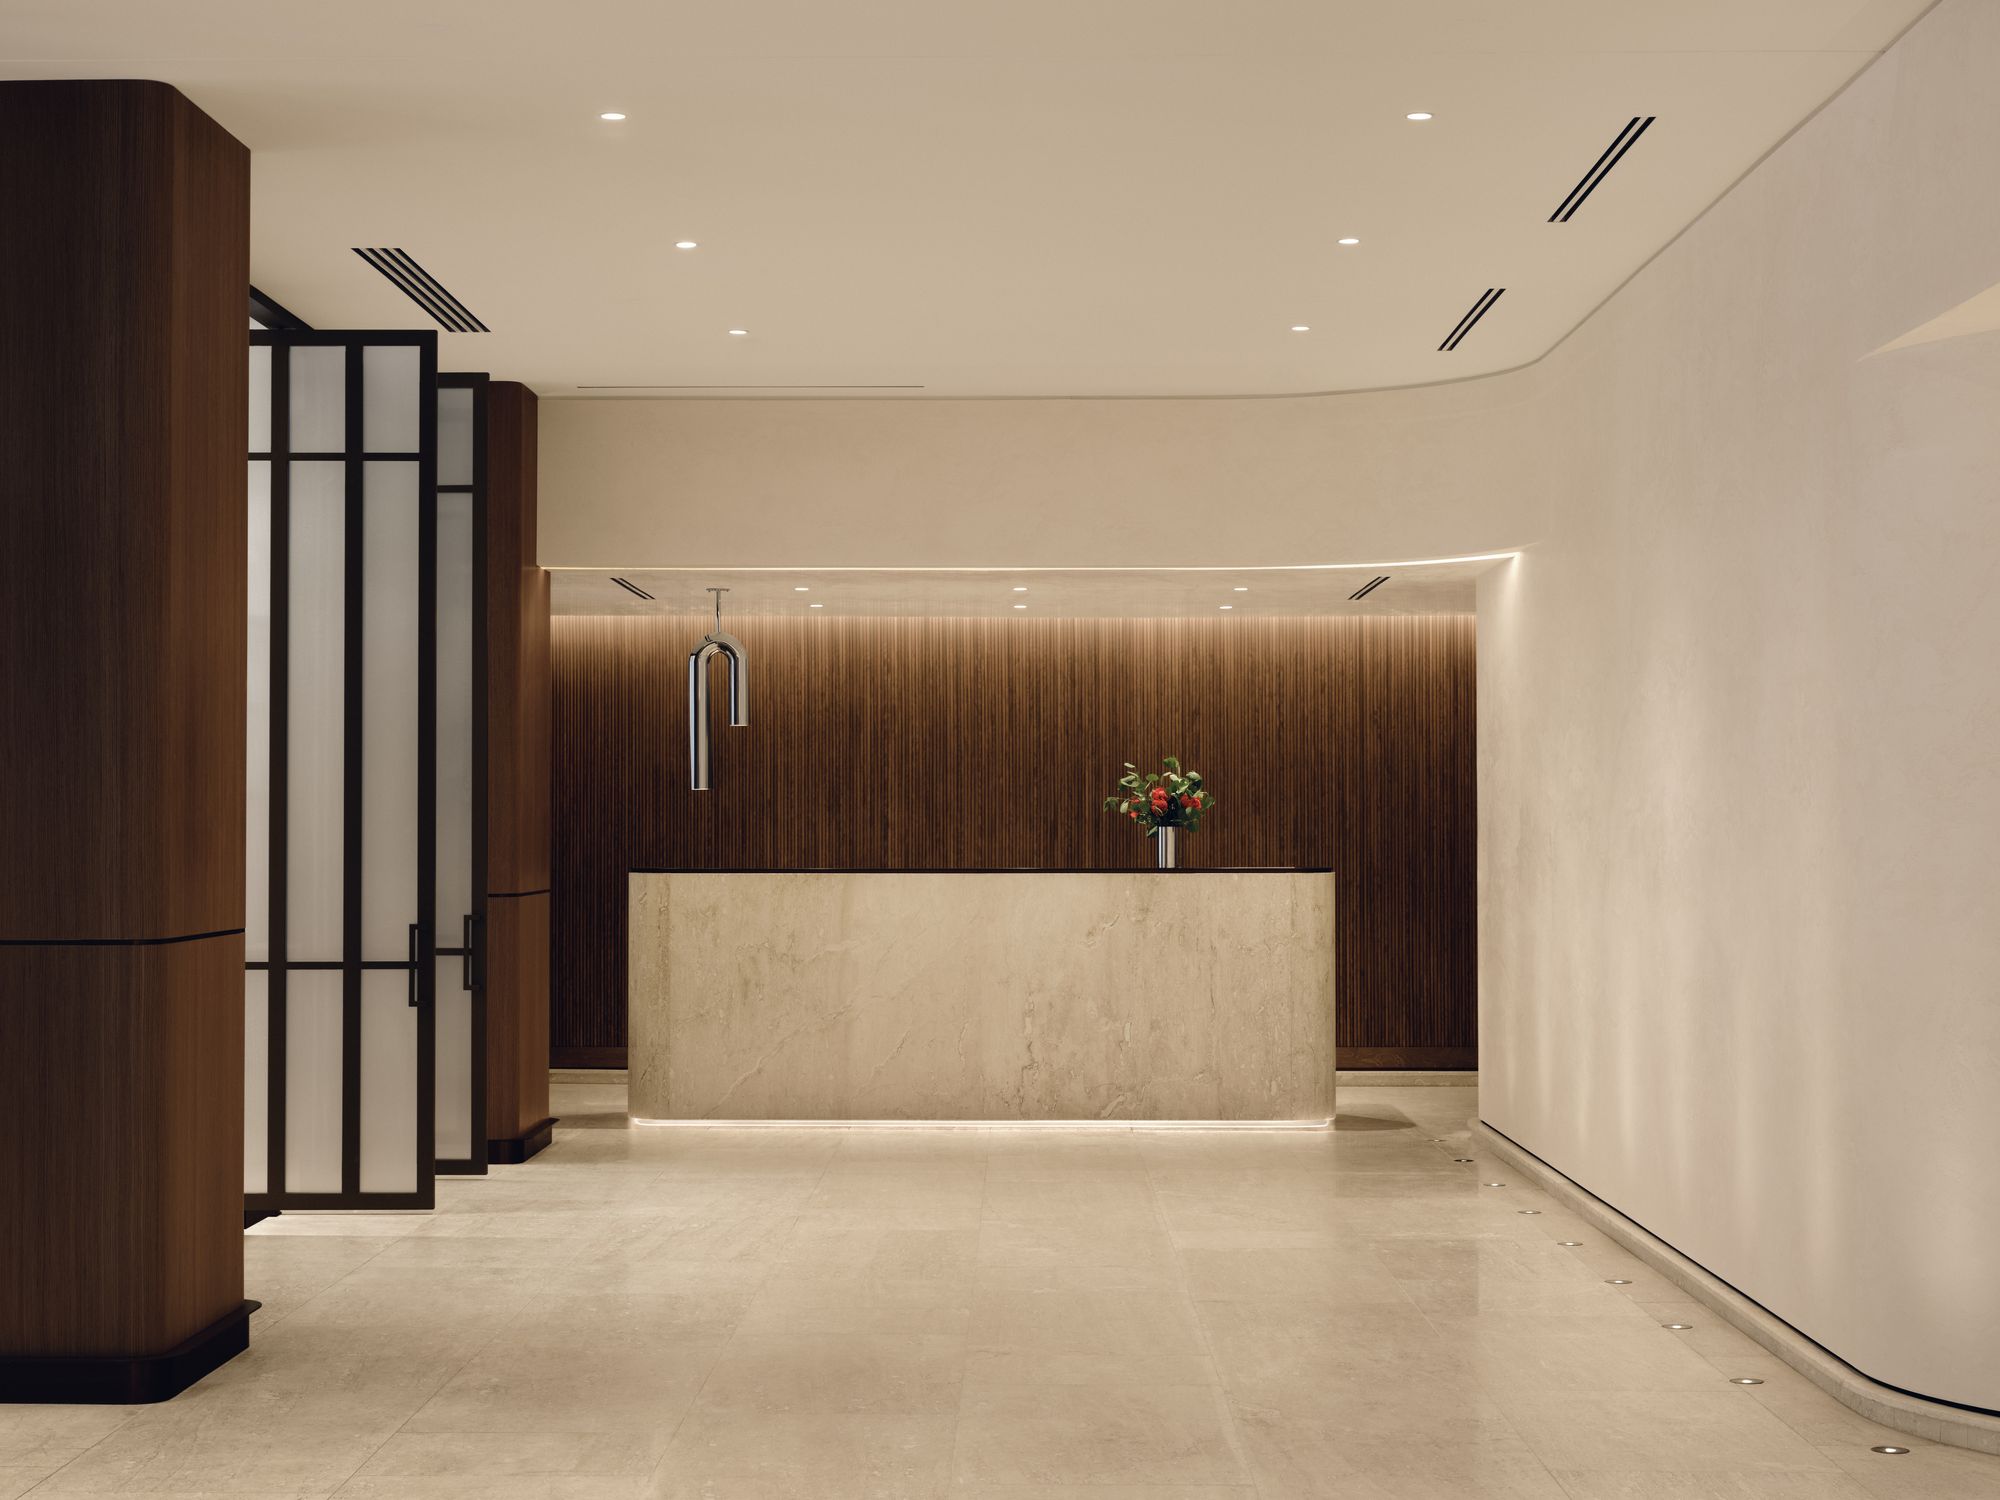 蒙特利尔市中心时尚酒店|ART-Arrakis | 建筑室内设计的创新与灵感